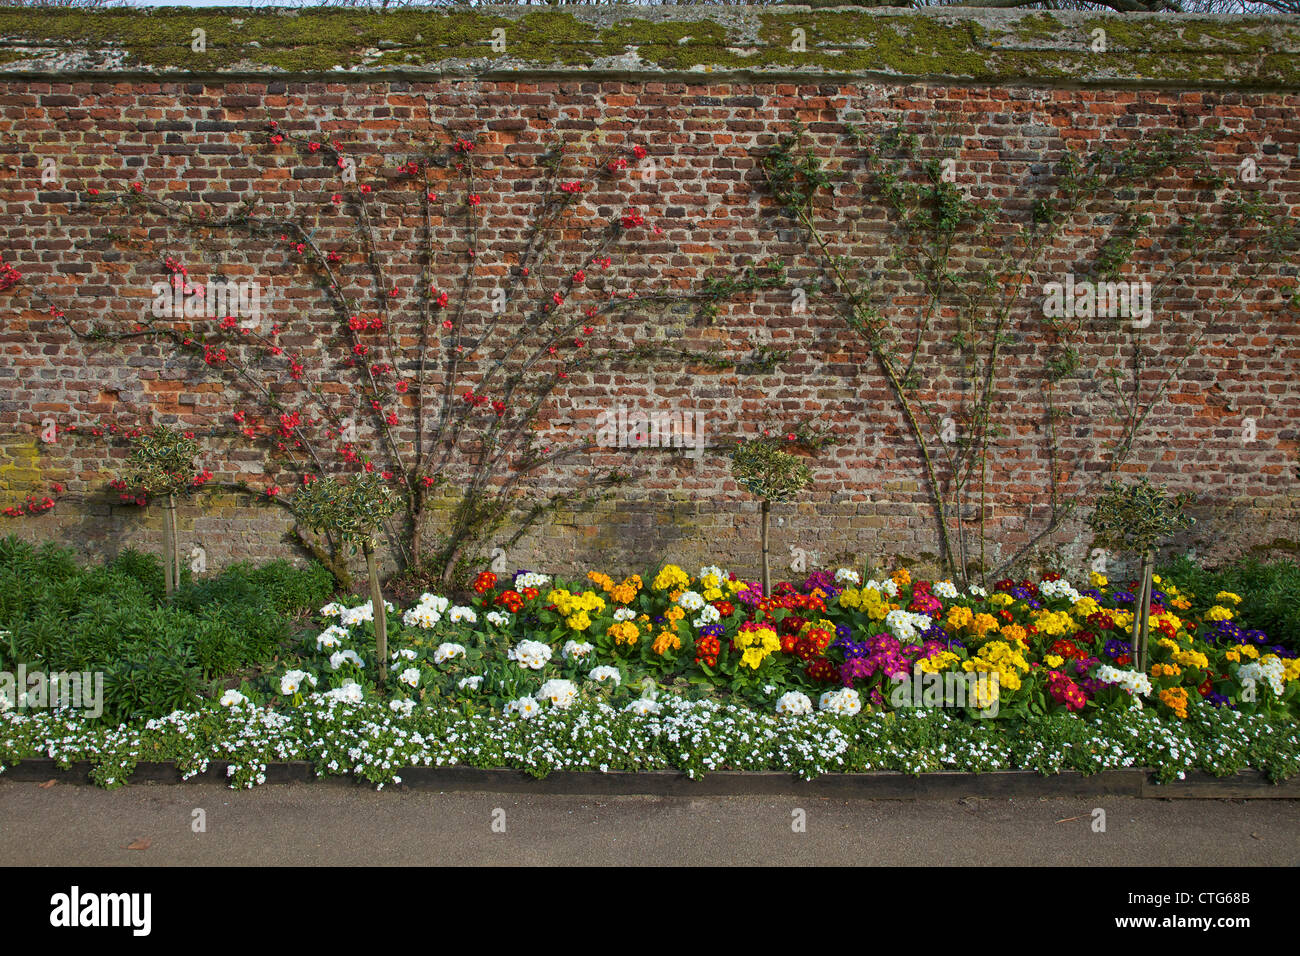 Formale Gärten, Hampton Court Palace, London, Surrey, England, UK, Vereinigtes Königreich, GB, Großbritannien, britische Inseln, Europa Stockfoto